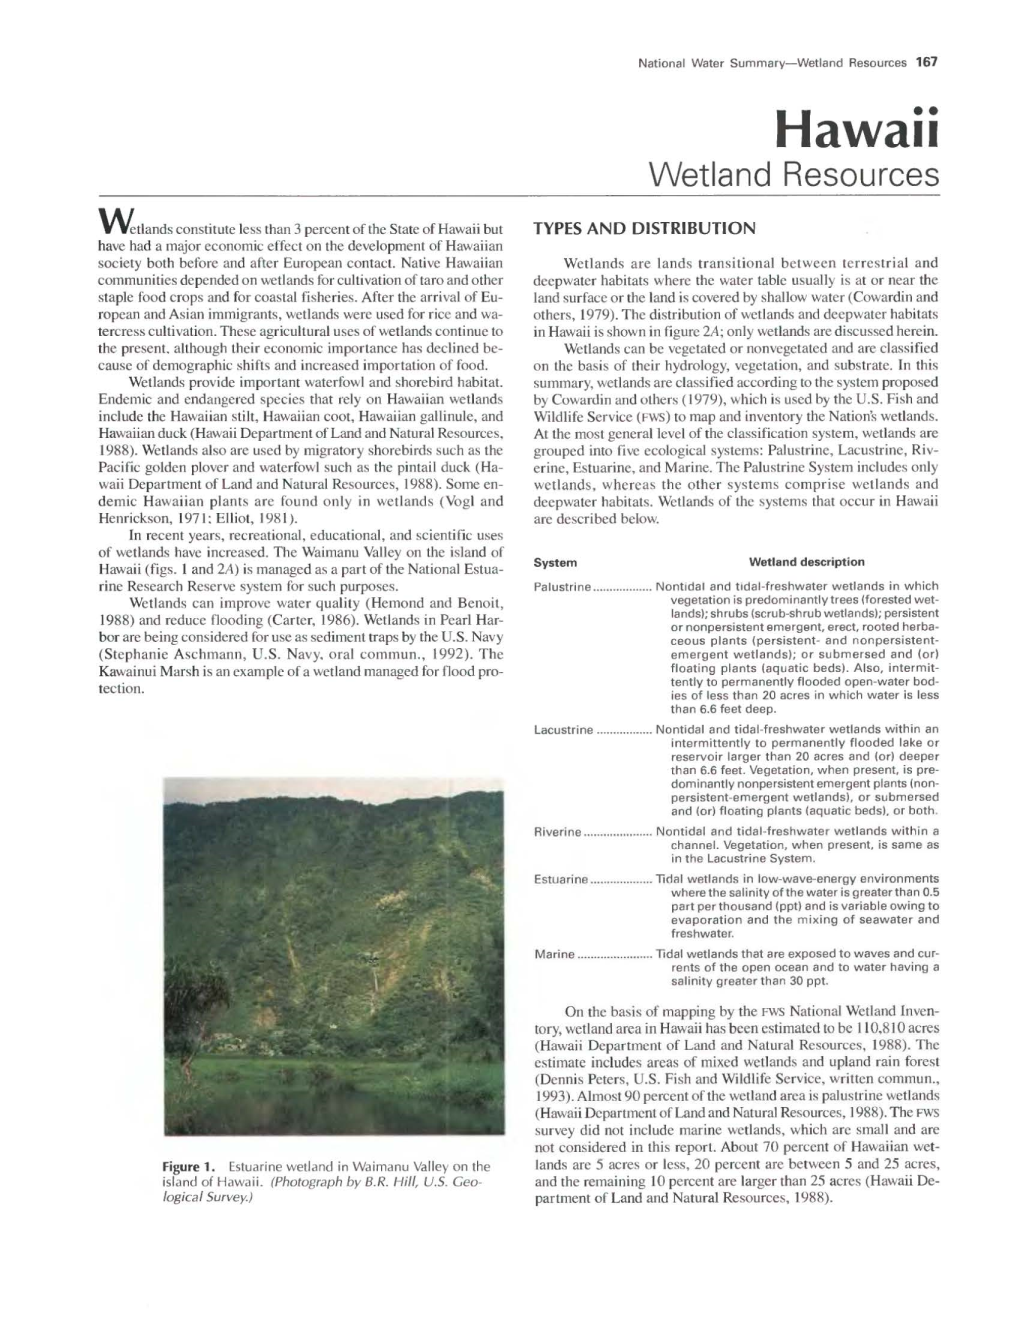 National Water Summary Wetland Resources: Hawaii